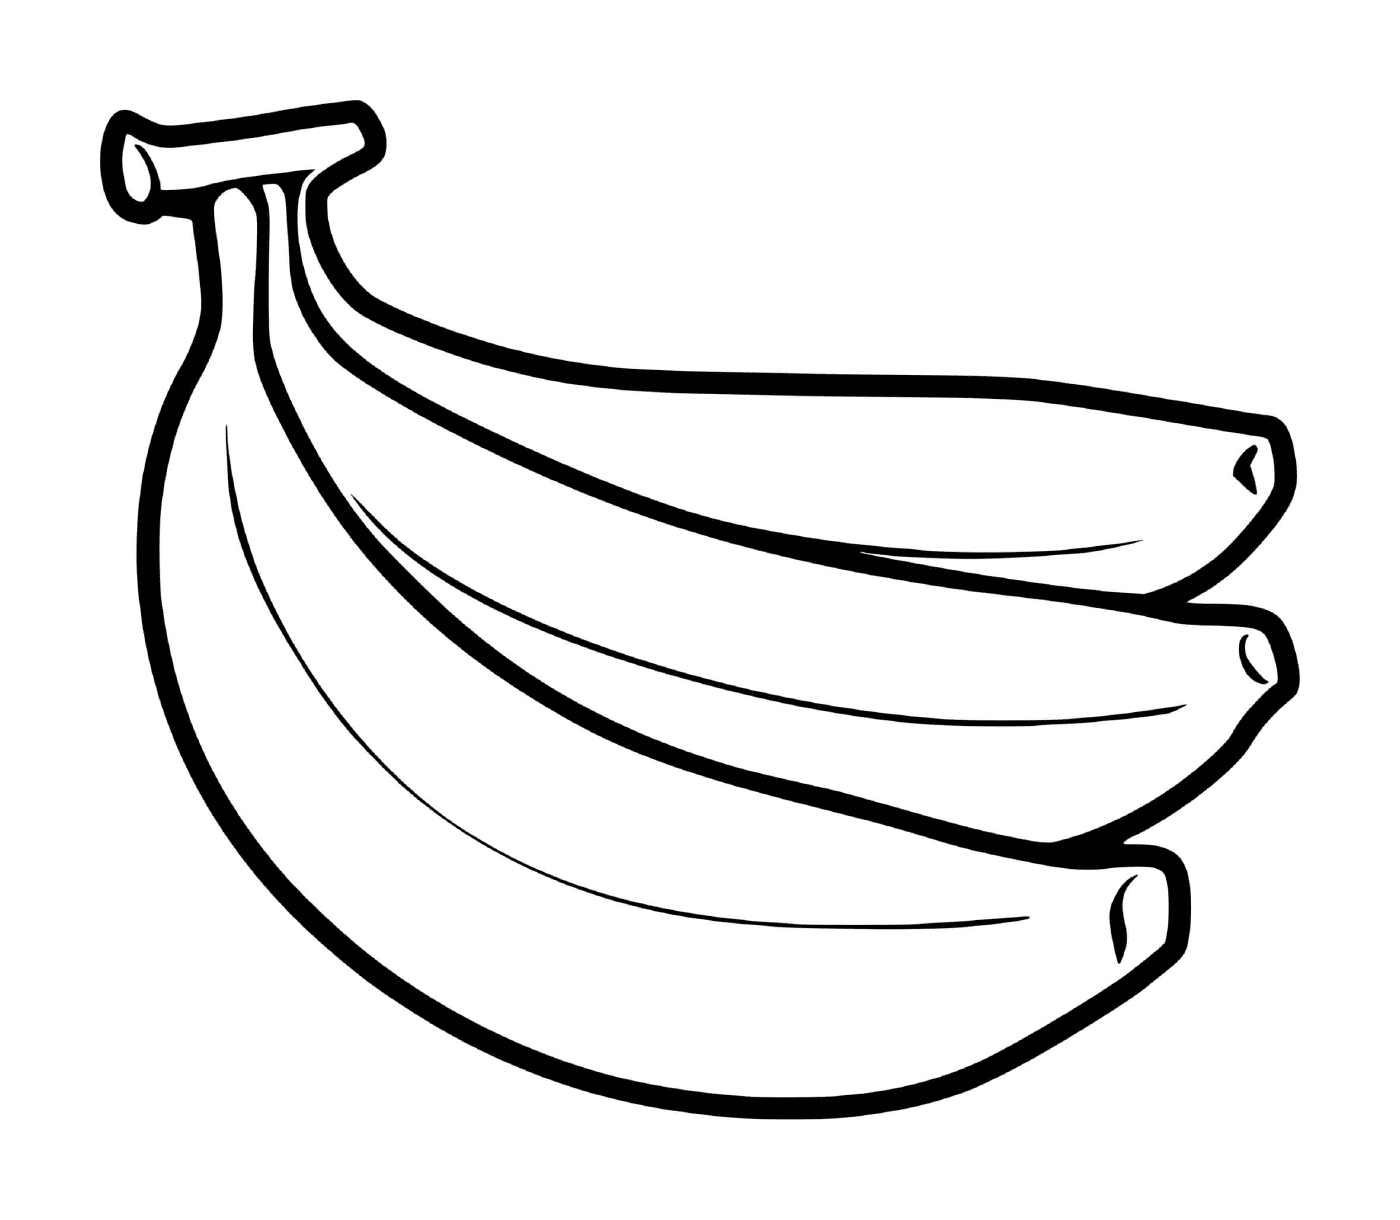  埋在地上的香蕉 